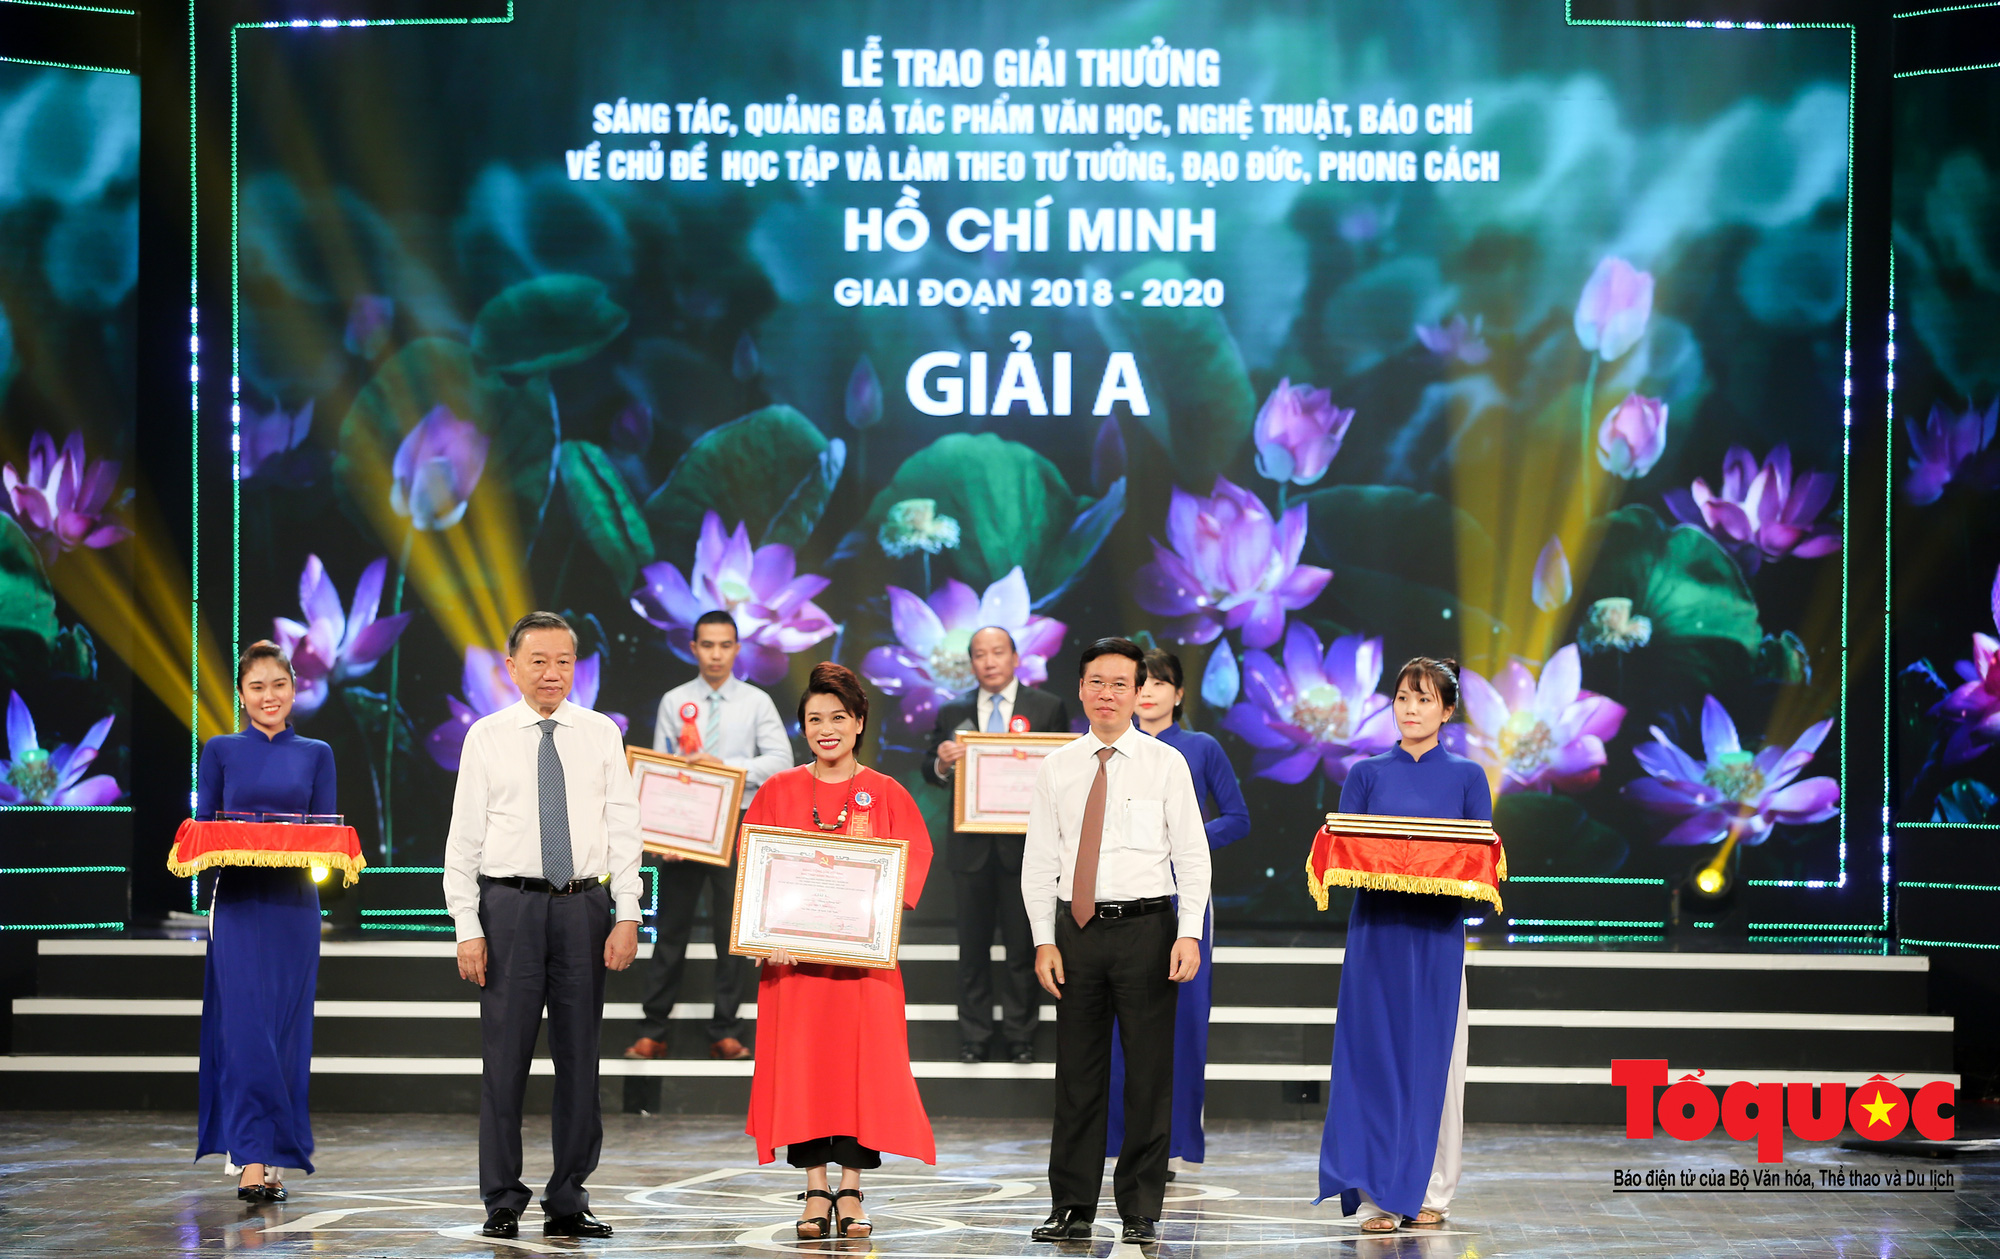 Lễ trao giải sáng tác chủ đề “Học tập và làm theo tư tưởng, đạo đức, phong cách Hồ Chí Minh” - Ảnh 6.